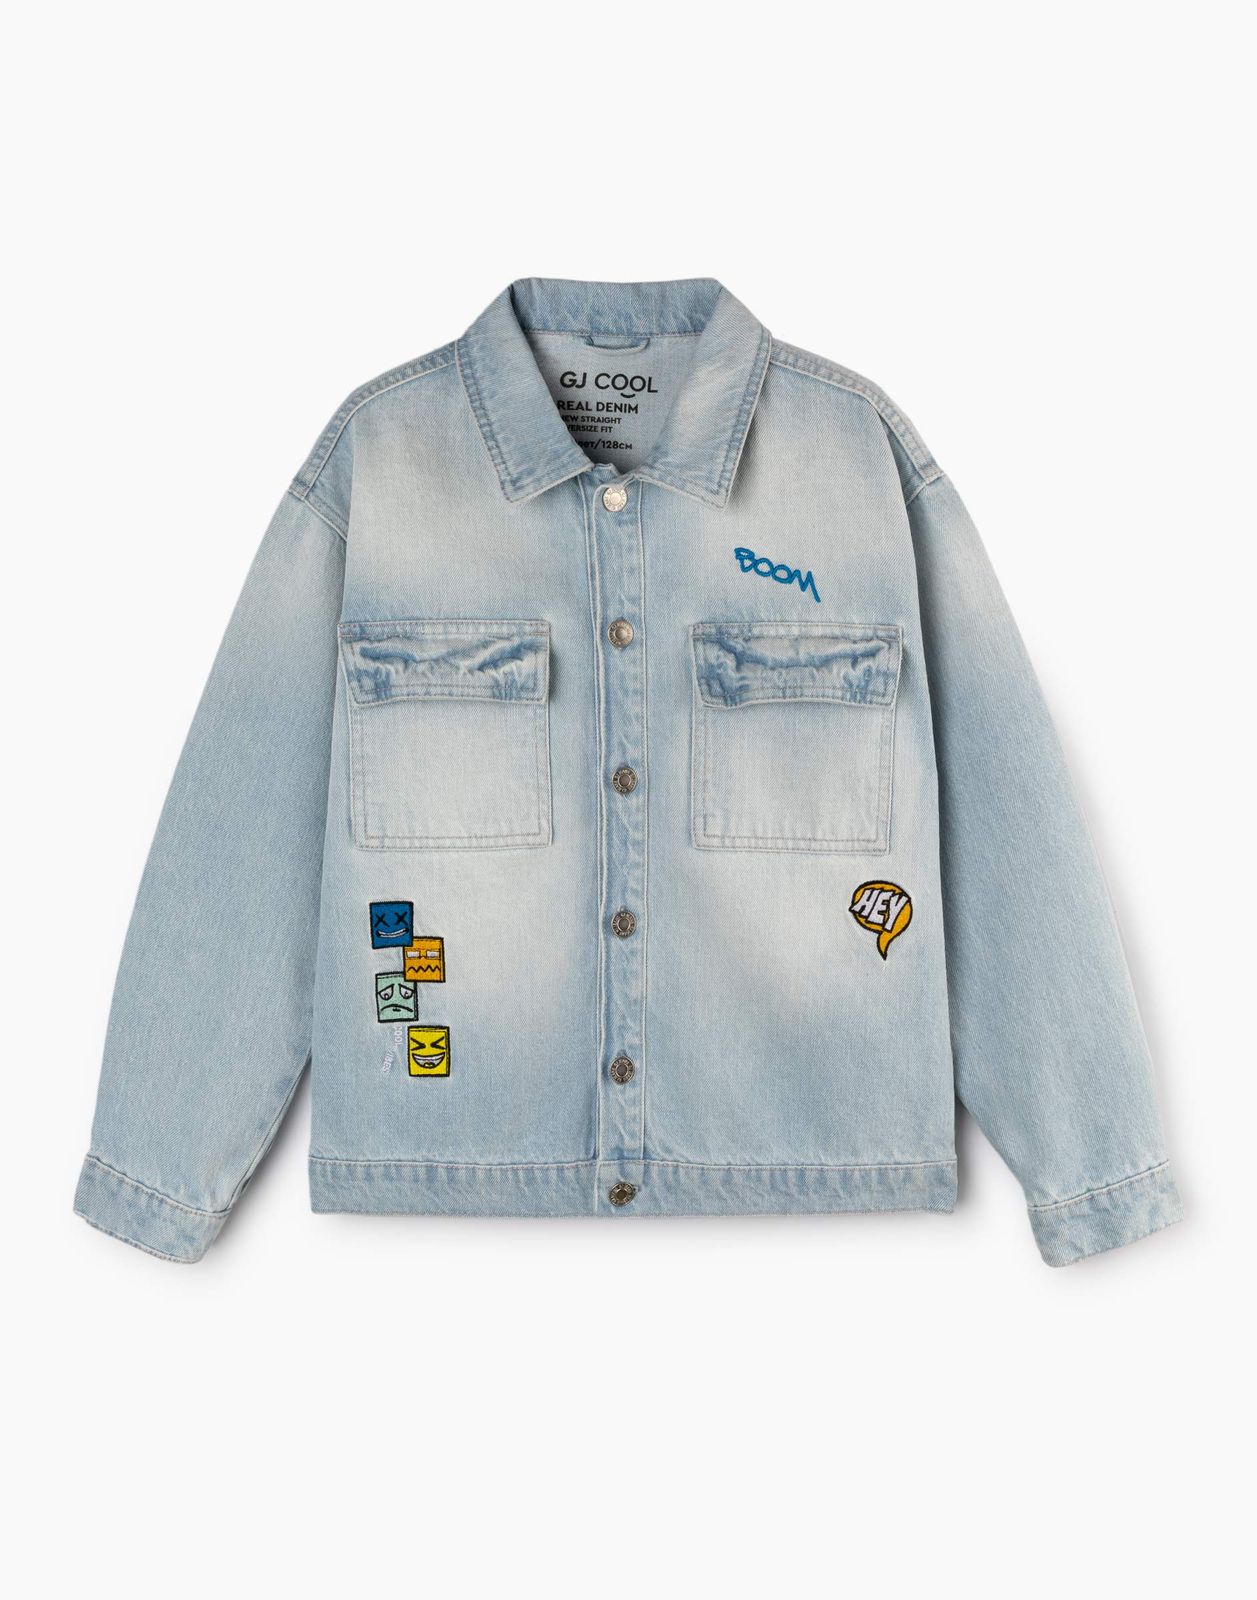 Джинсовый жакет (куртка) для мальчика Gloria Jeans BJC002603 синий /медиум-лайт/ 2-4г/104